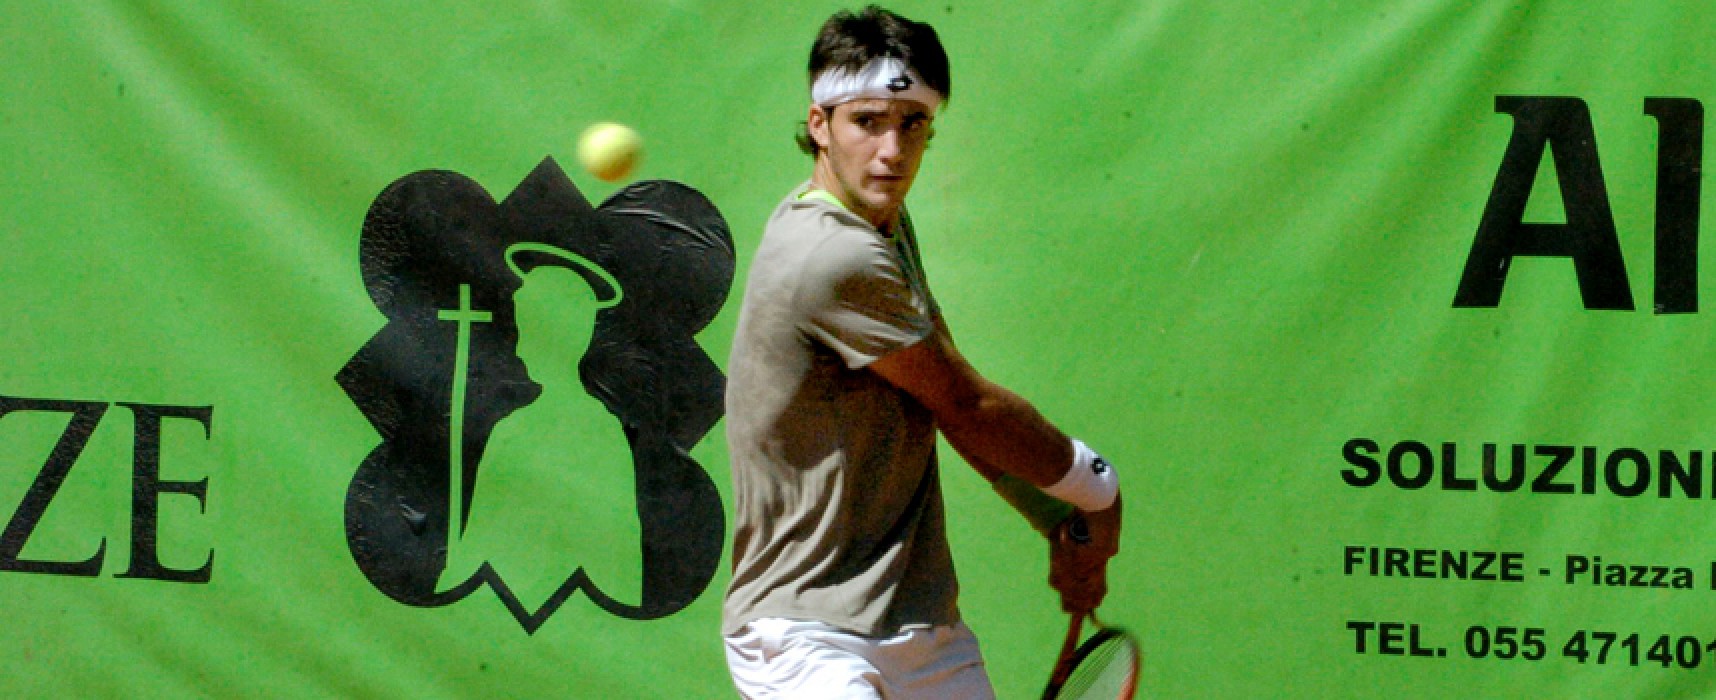 Tennis: Città di Santa Croce, Pellegrino ai quarti